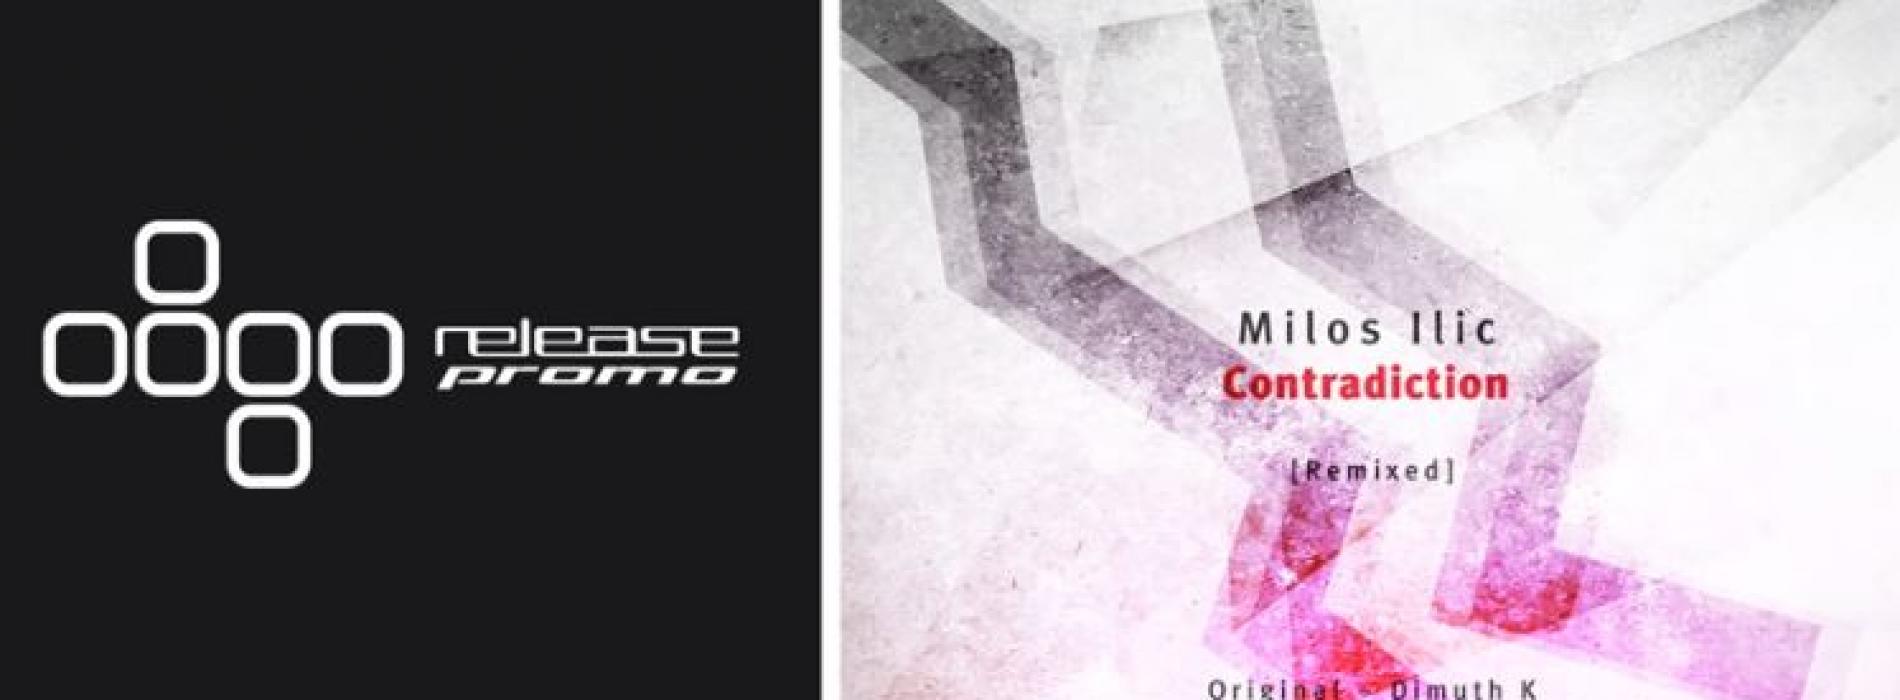 Milos Ilic – Contradiction (Dimuth K Remix) [PHW Elements]